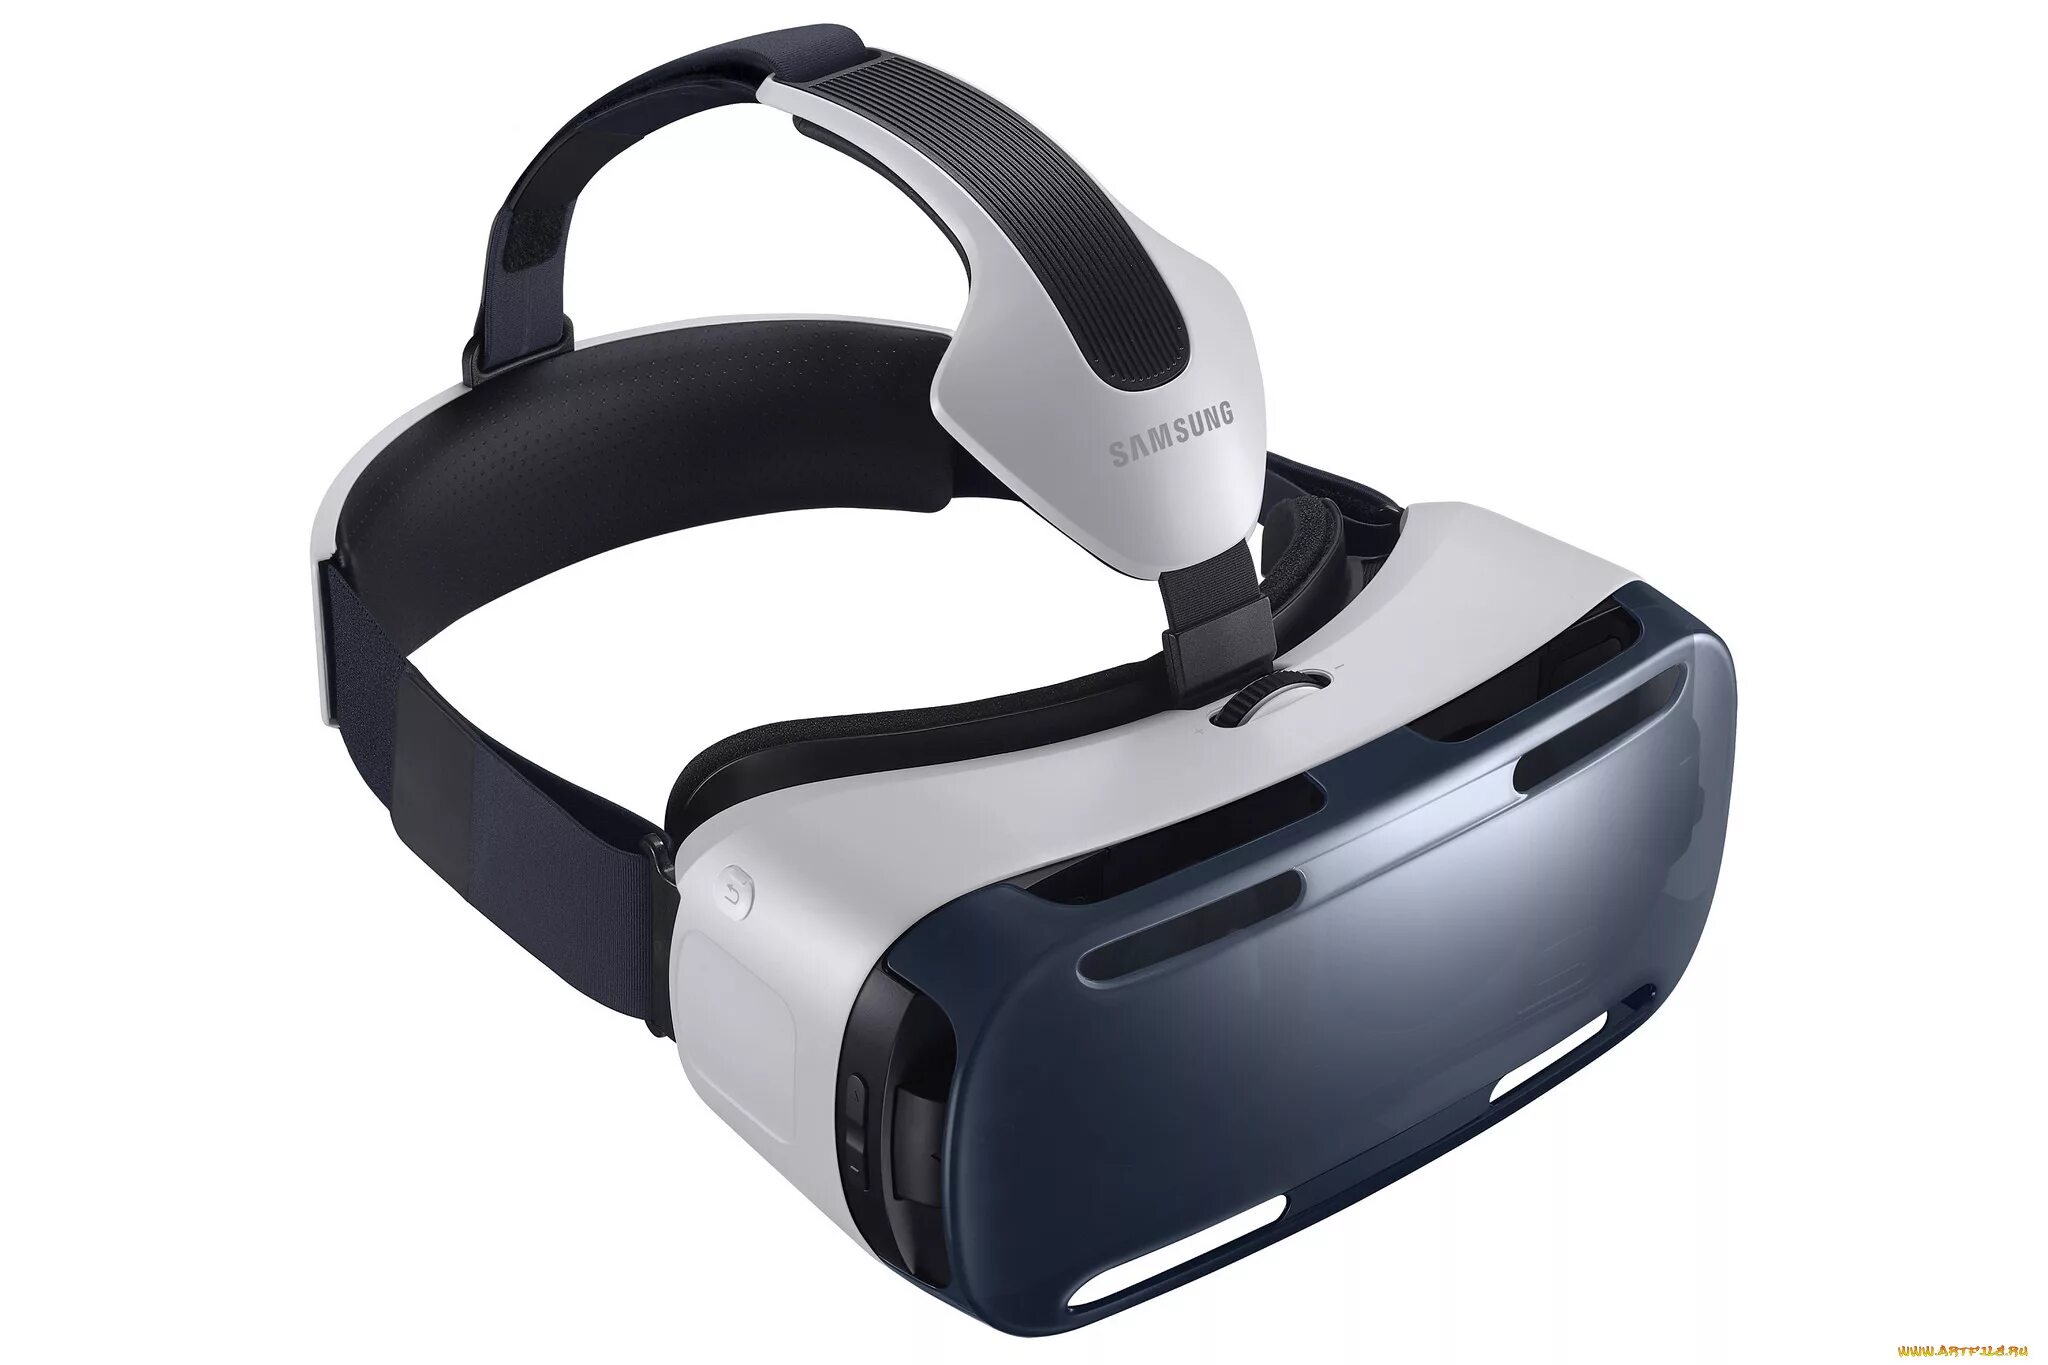 Виар очки реальности. Гир виар очки. Samsung Gear VR. Виртуальные очки самсунг. Виар очки самсунг.